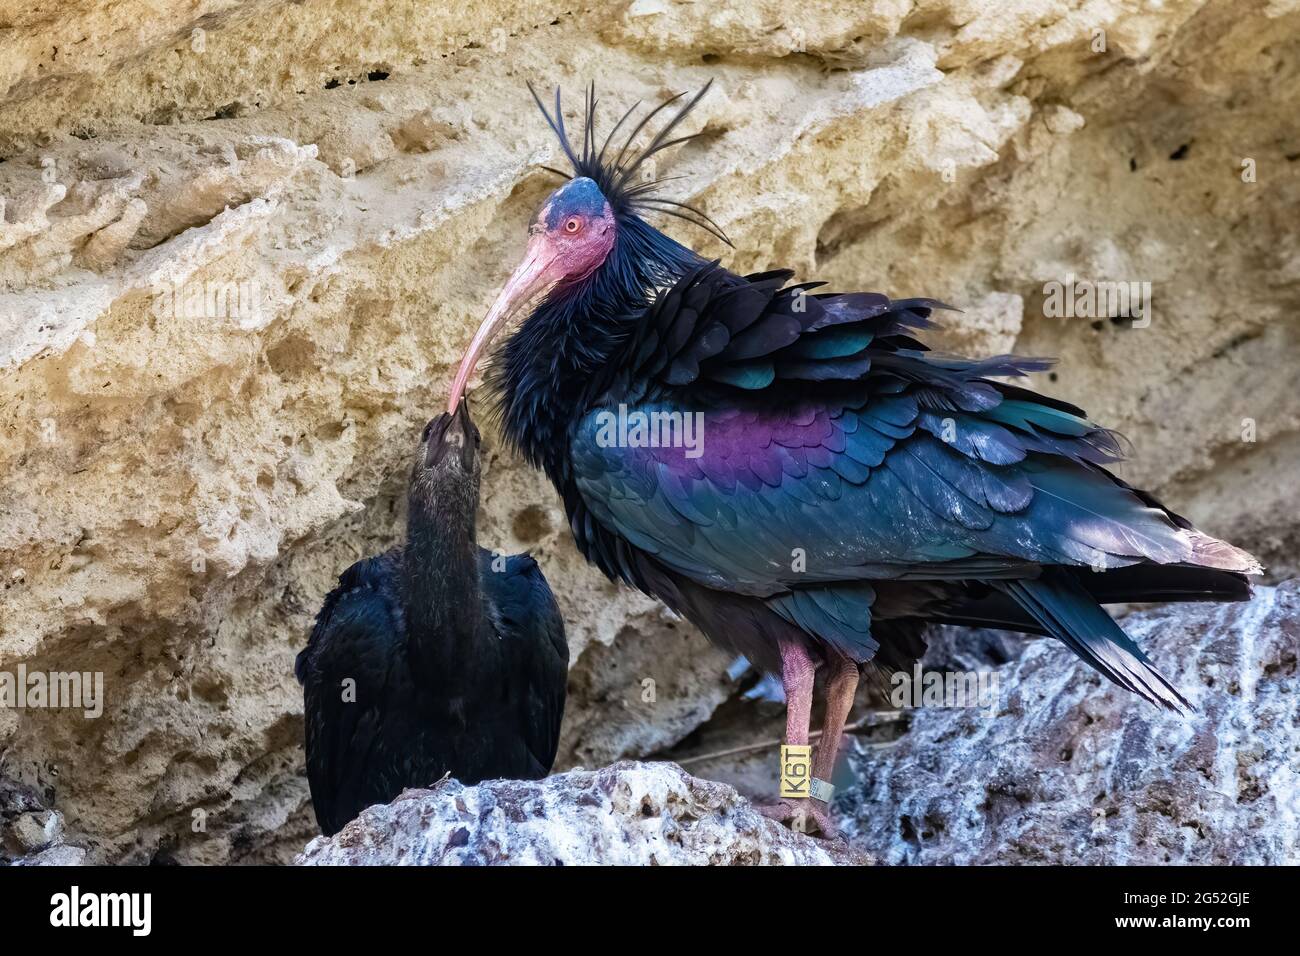 Nordkahleier, Einsiedler Ibis oder Waldrapp - Geronticus eremita - im Nest mit seinem Küken Stockfoto